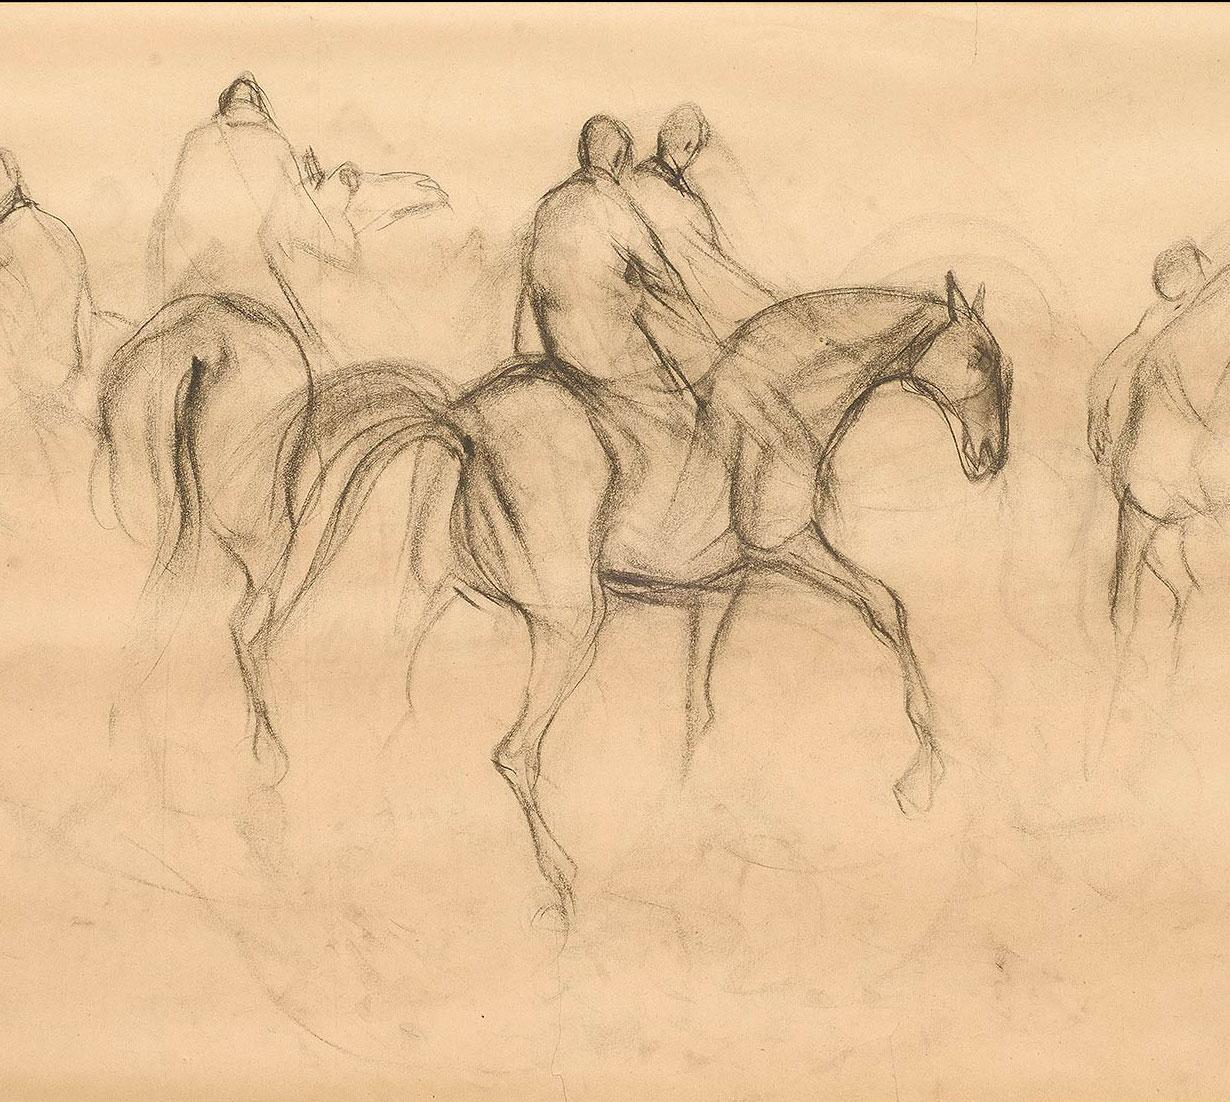 Sunil Das - Frühe Pferde X - 34 x 20,75 Zoll (ungerahmtes Format)
Zeichenkohle auf Papier
( Gerahmt & Geliefert )

Sunil Das war einer der wichtigsten postmodernen Maler Indiens und wurde durch seine Pferdezeichnungen bekannt. Er hat ihr